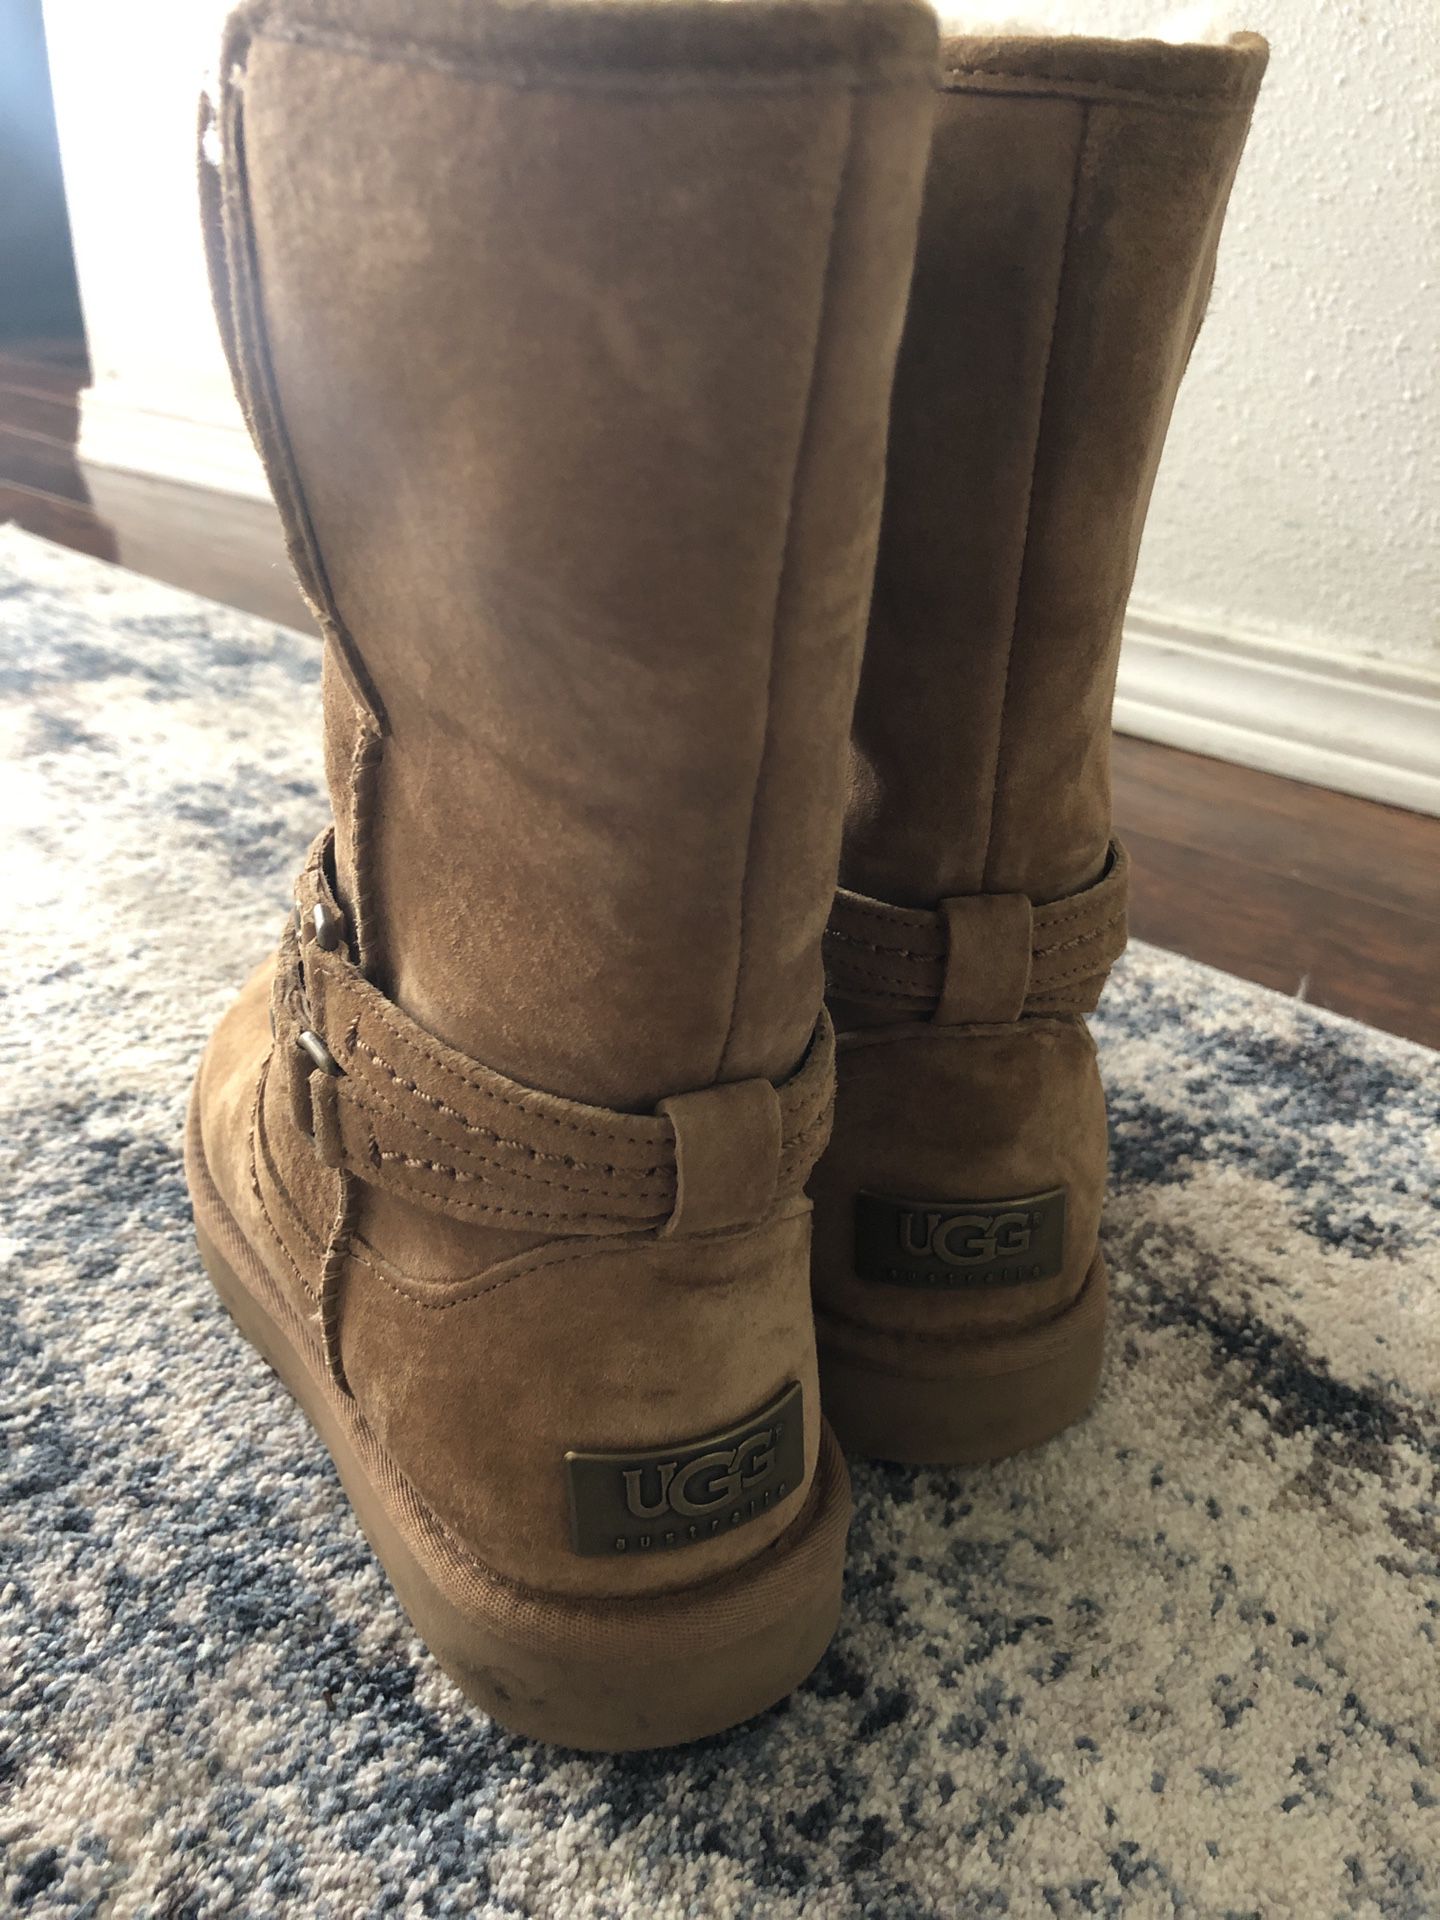 Ugg women’s boots